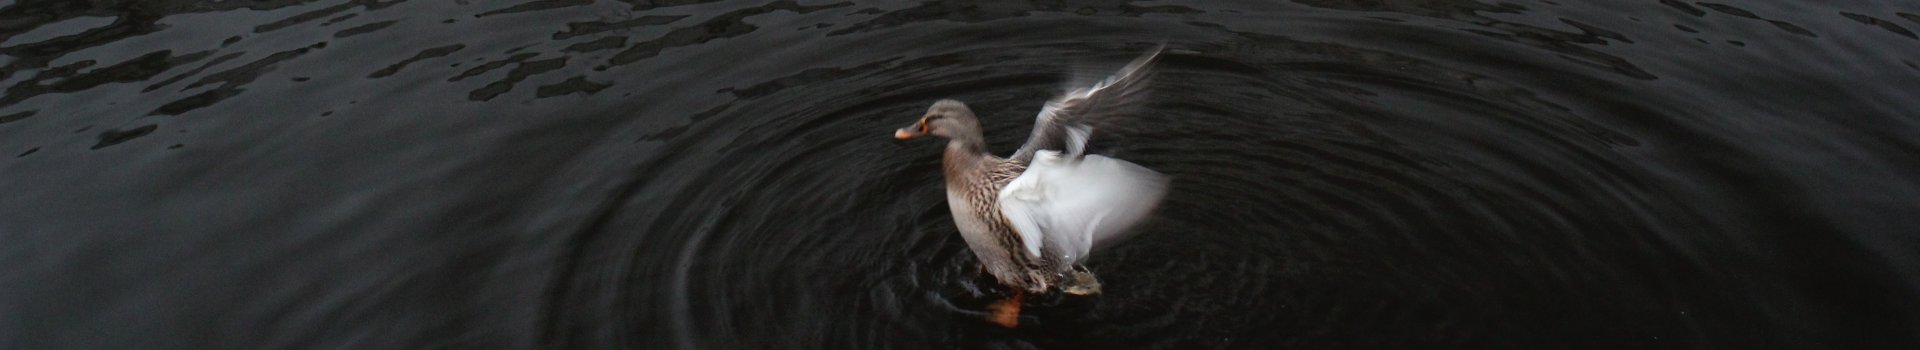 duck-c2